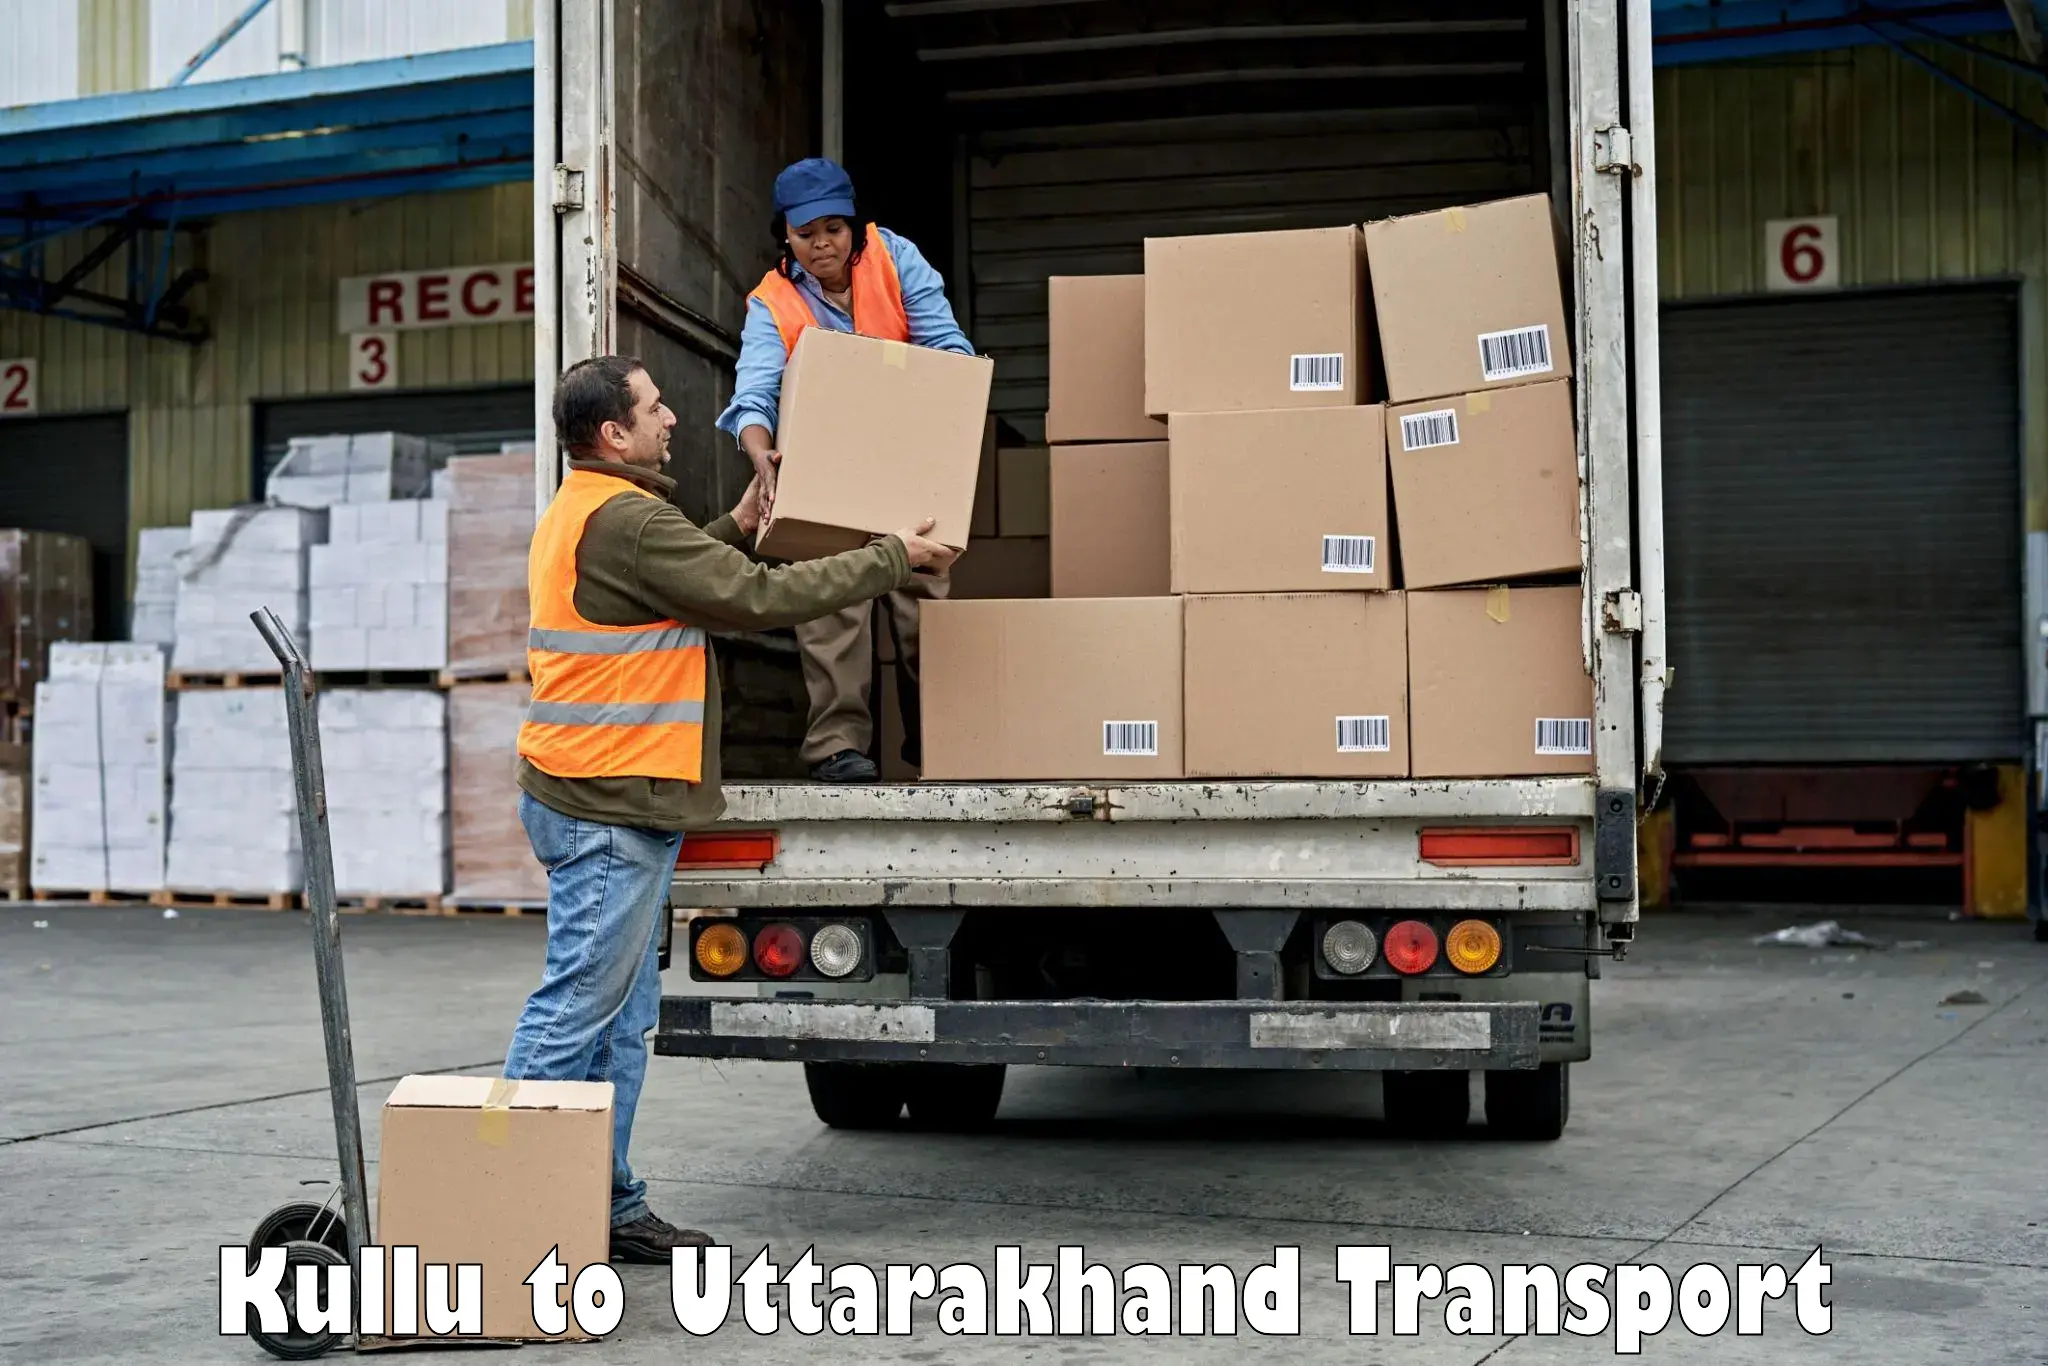 Luggage transport services Kullu to Lansdowne